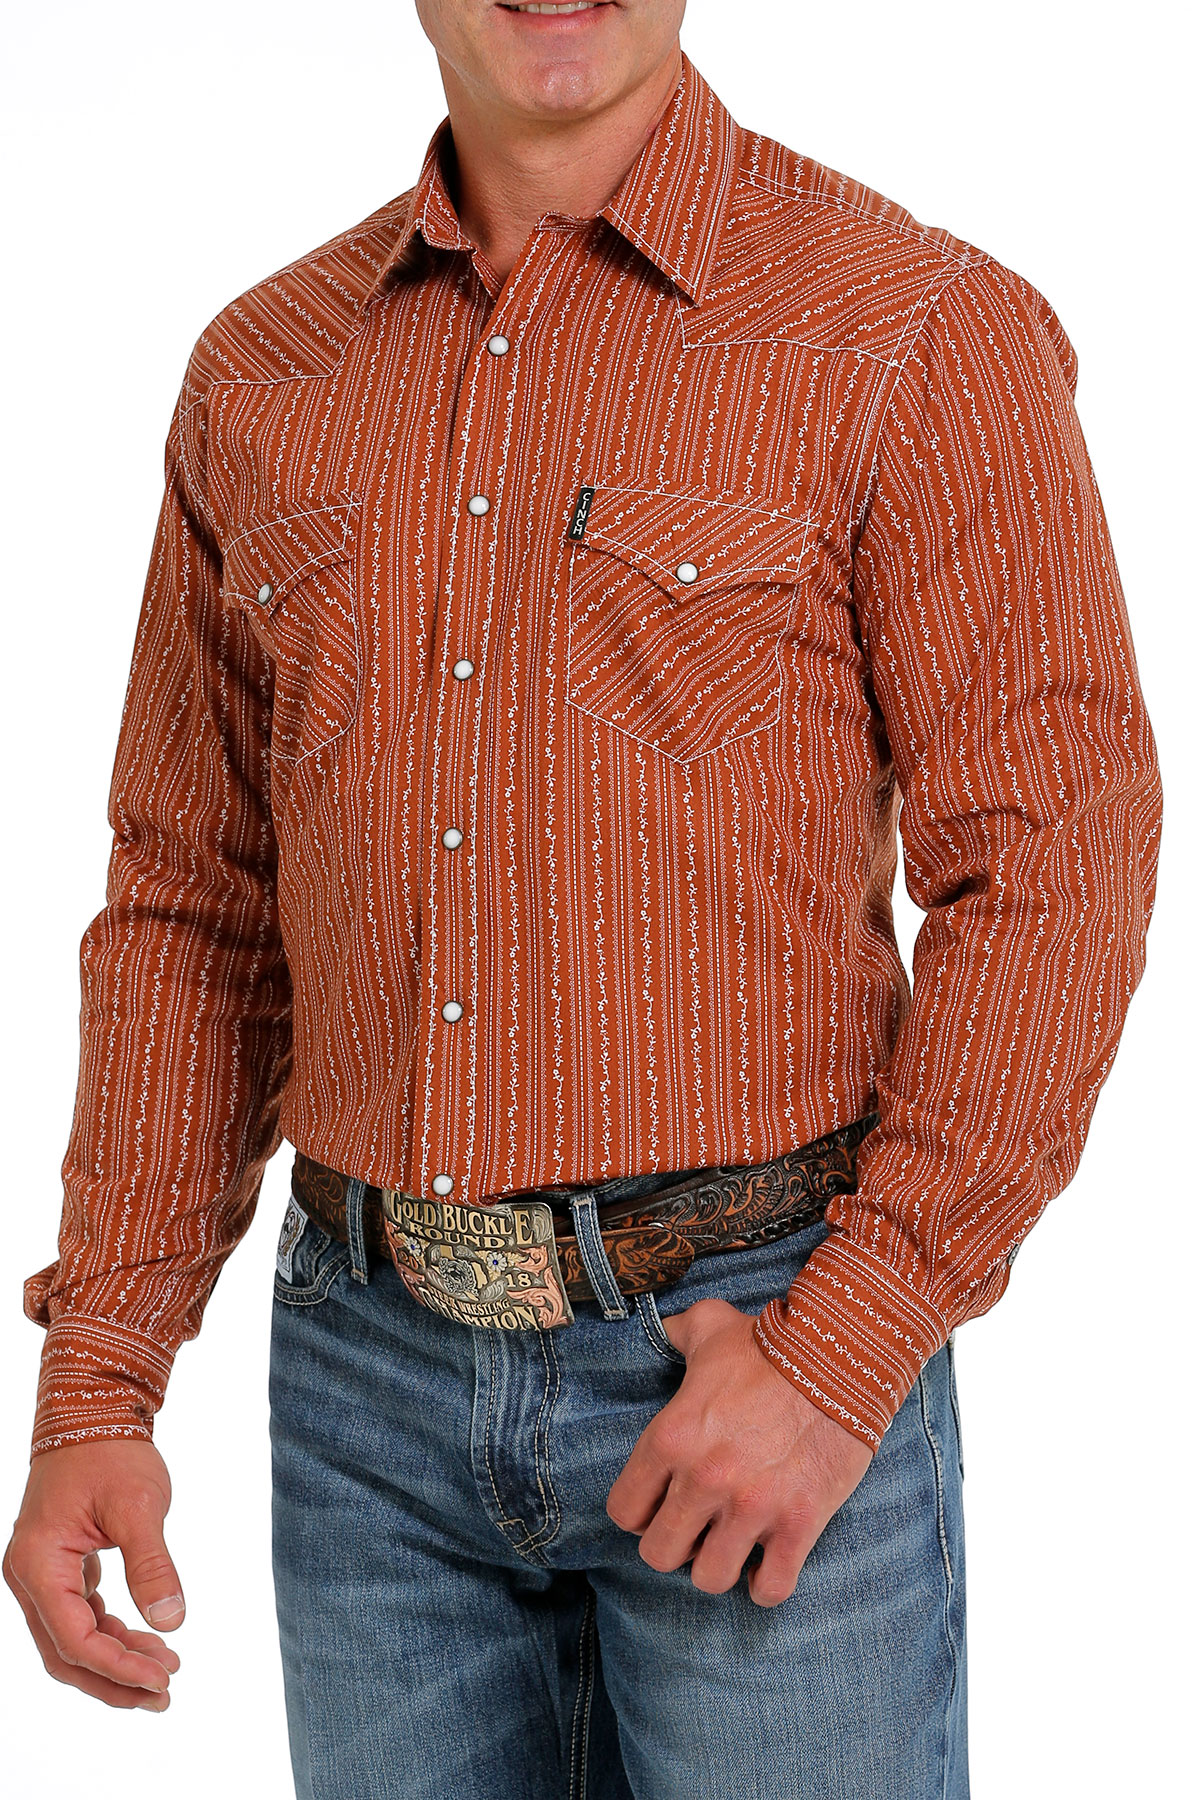 CINCH Jeans  Men's Modern Fit Snap Western Shirt - Multi